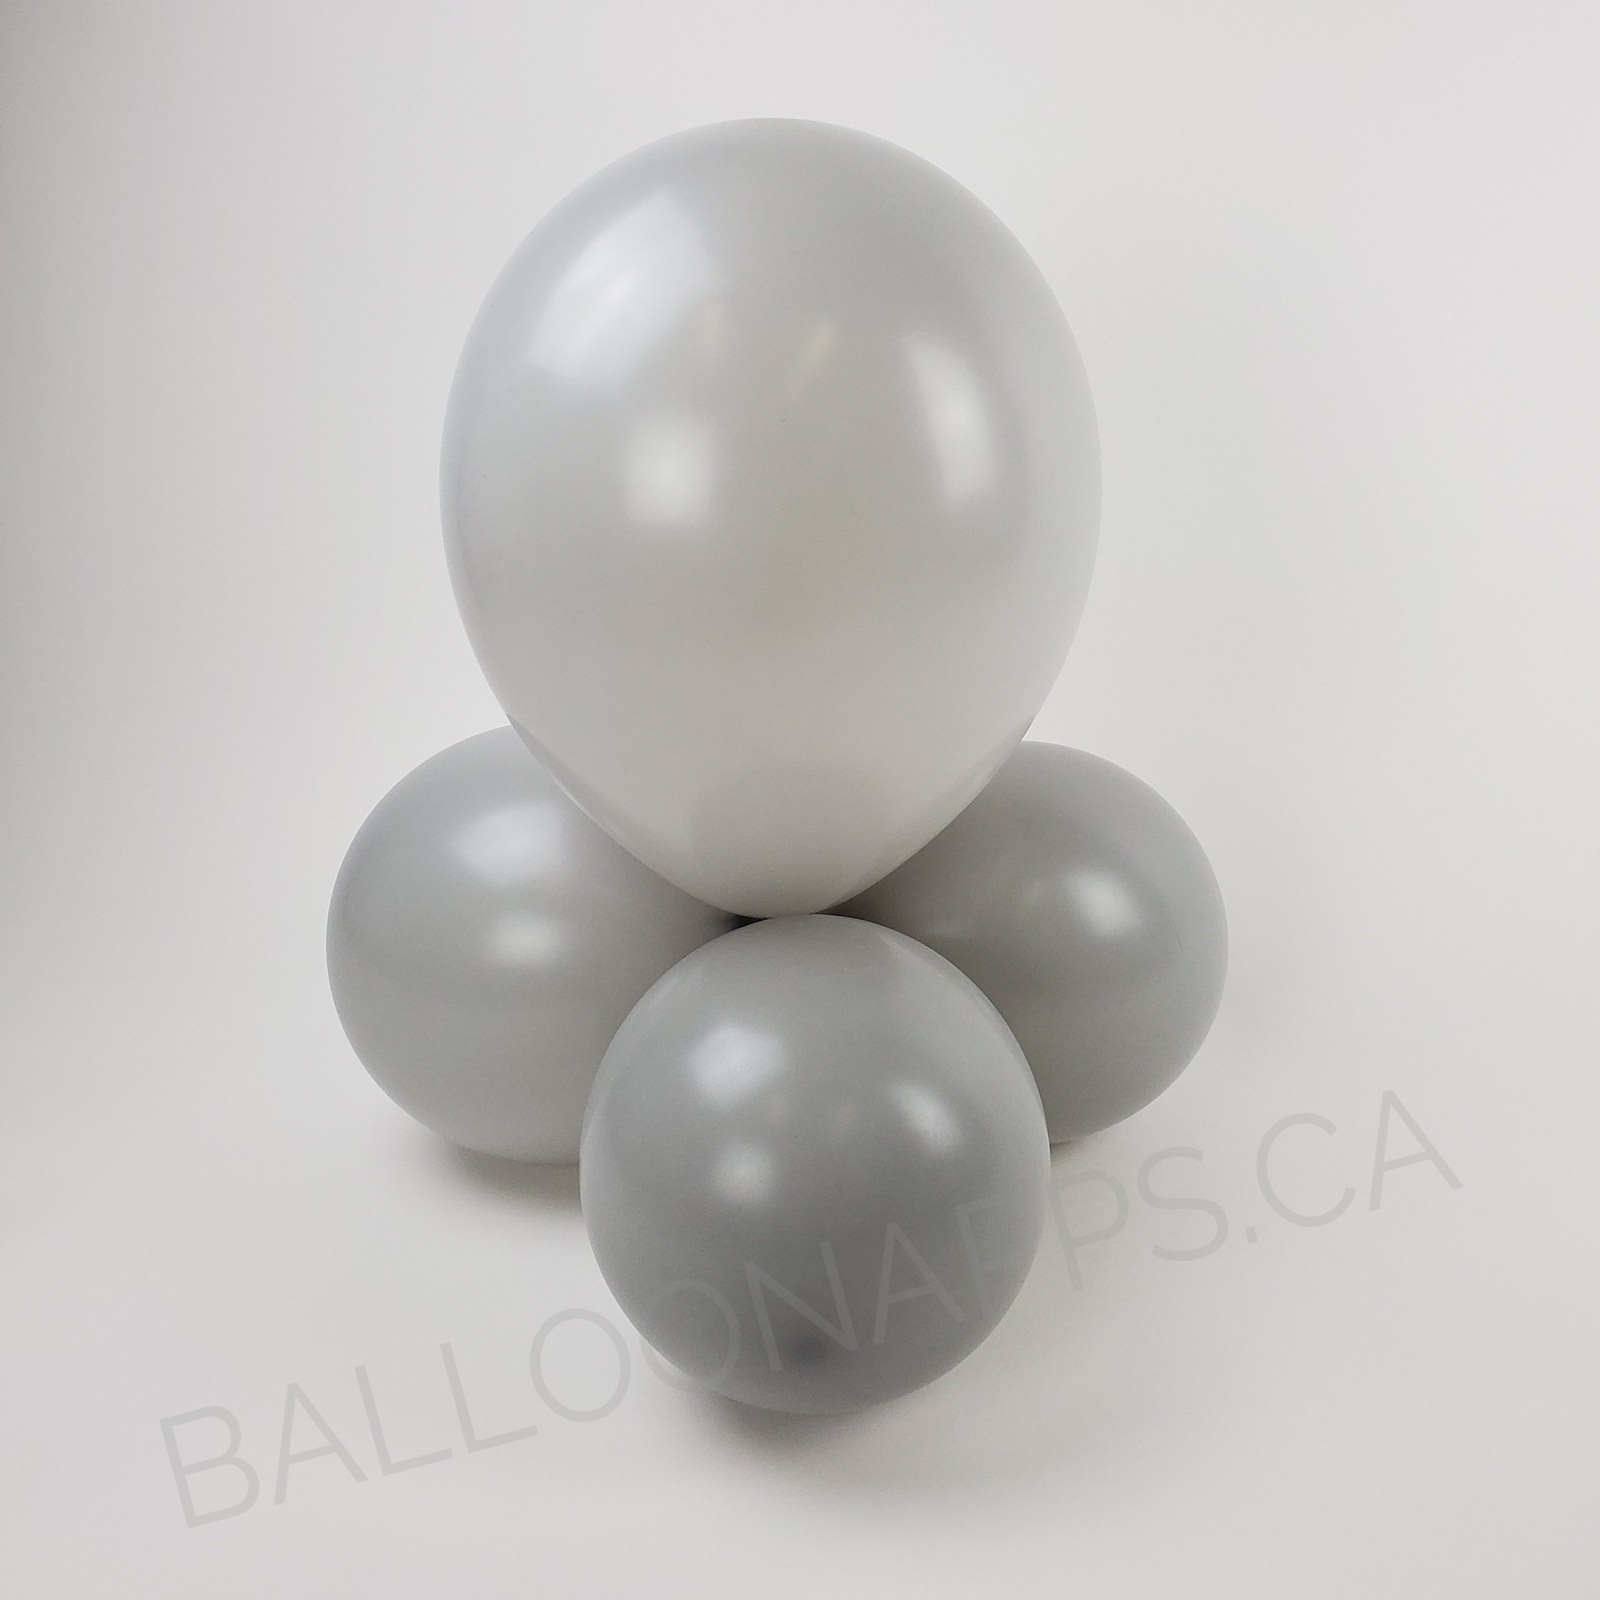 balloon texture BET (50) 660 Link-O-Loon Deluxe Grey balloons